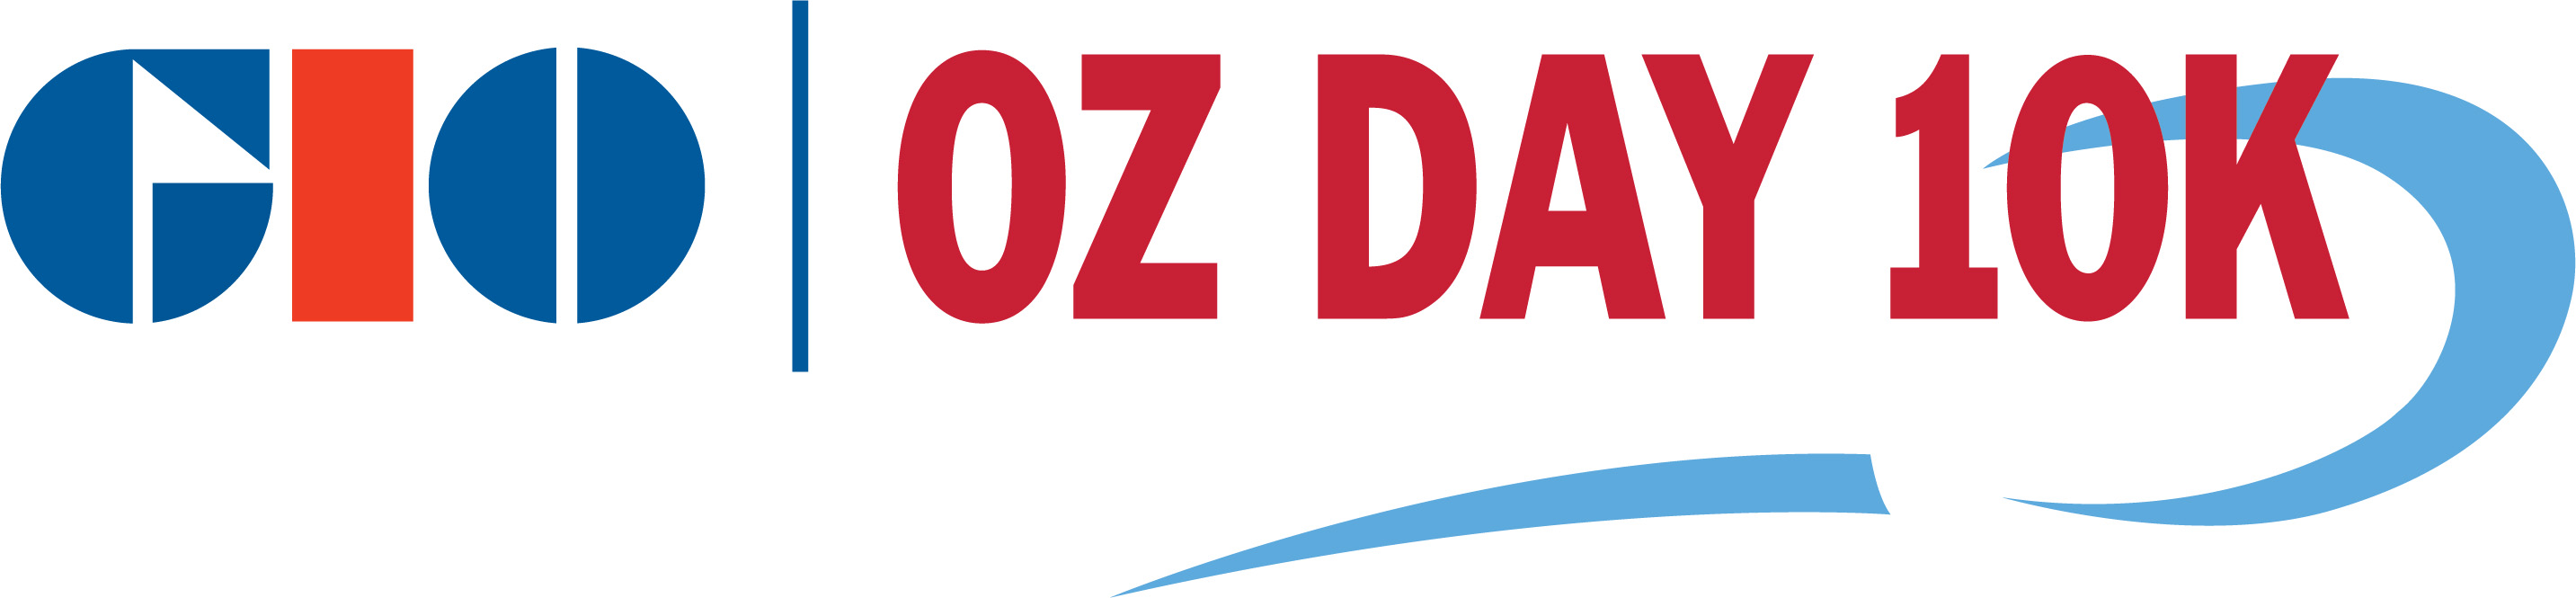 GIO Oz Day logo